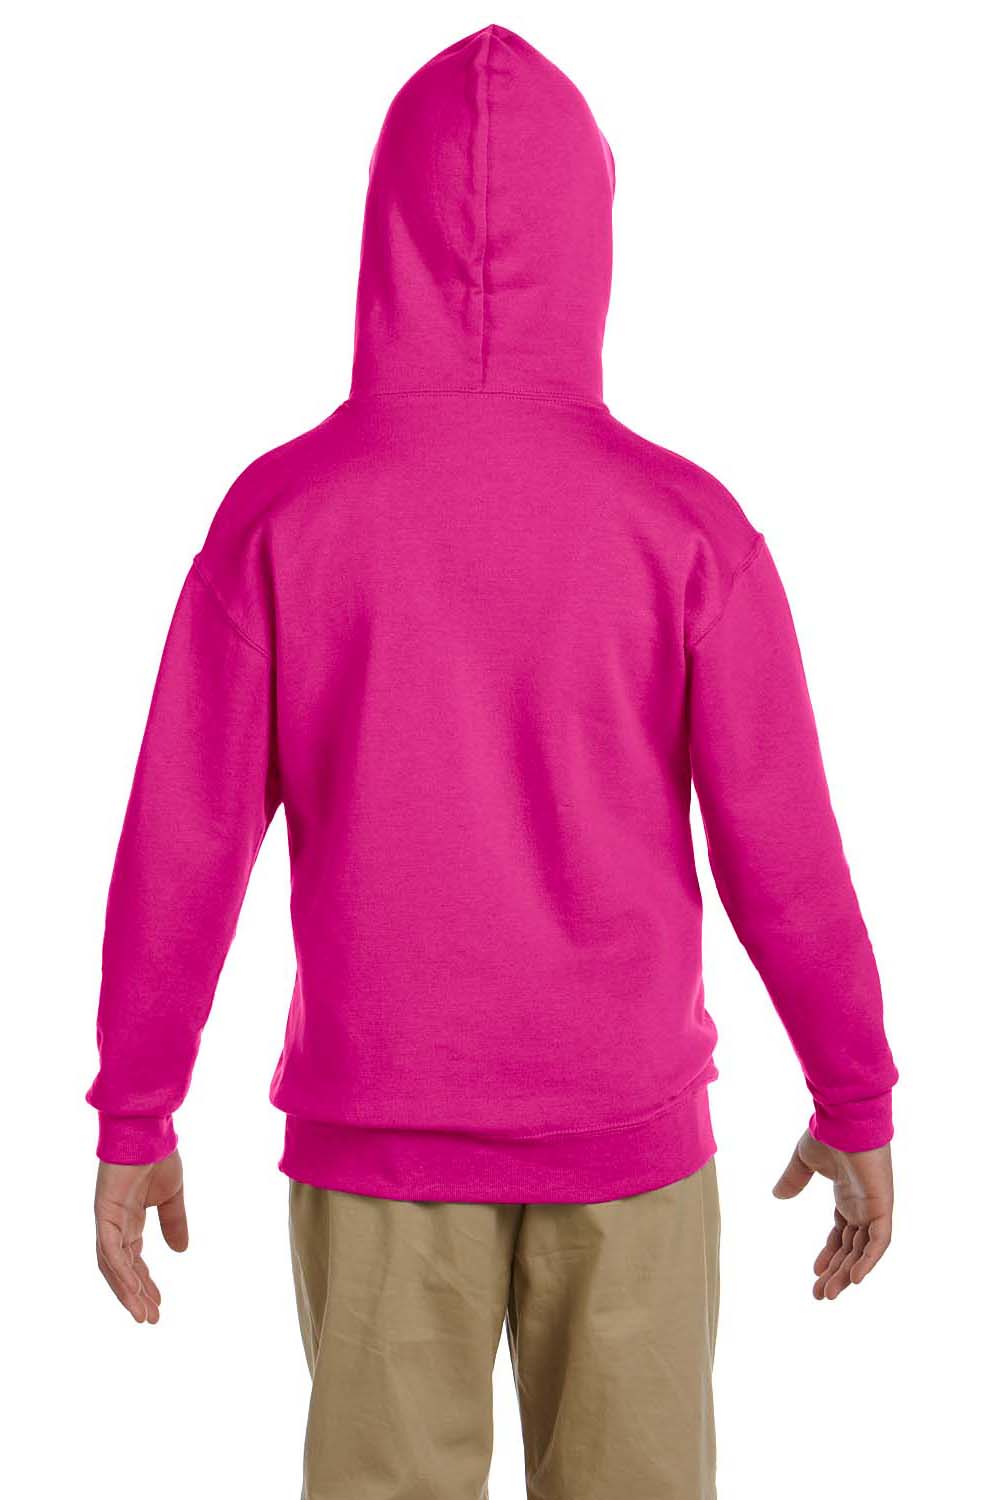 Jerzees 996Y Youth NuBlend Fleece Hooded Sweatshirt Hoodie Cyber Pink Back